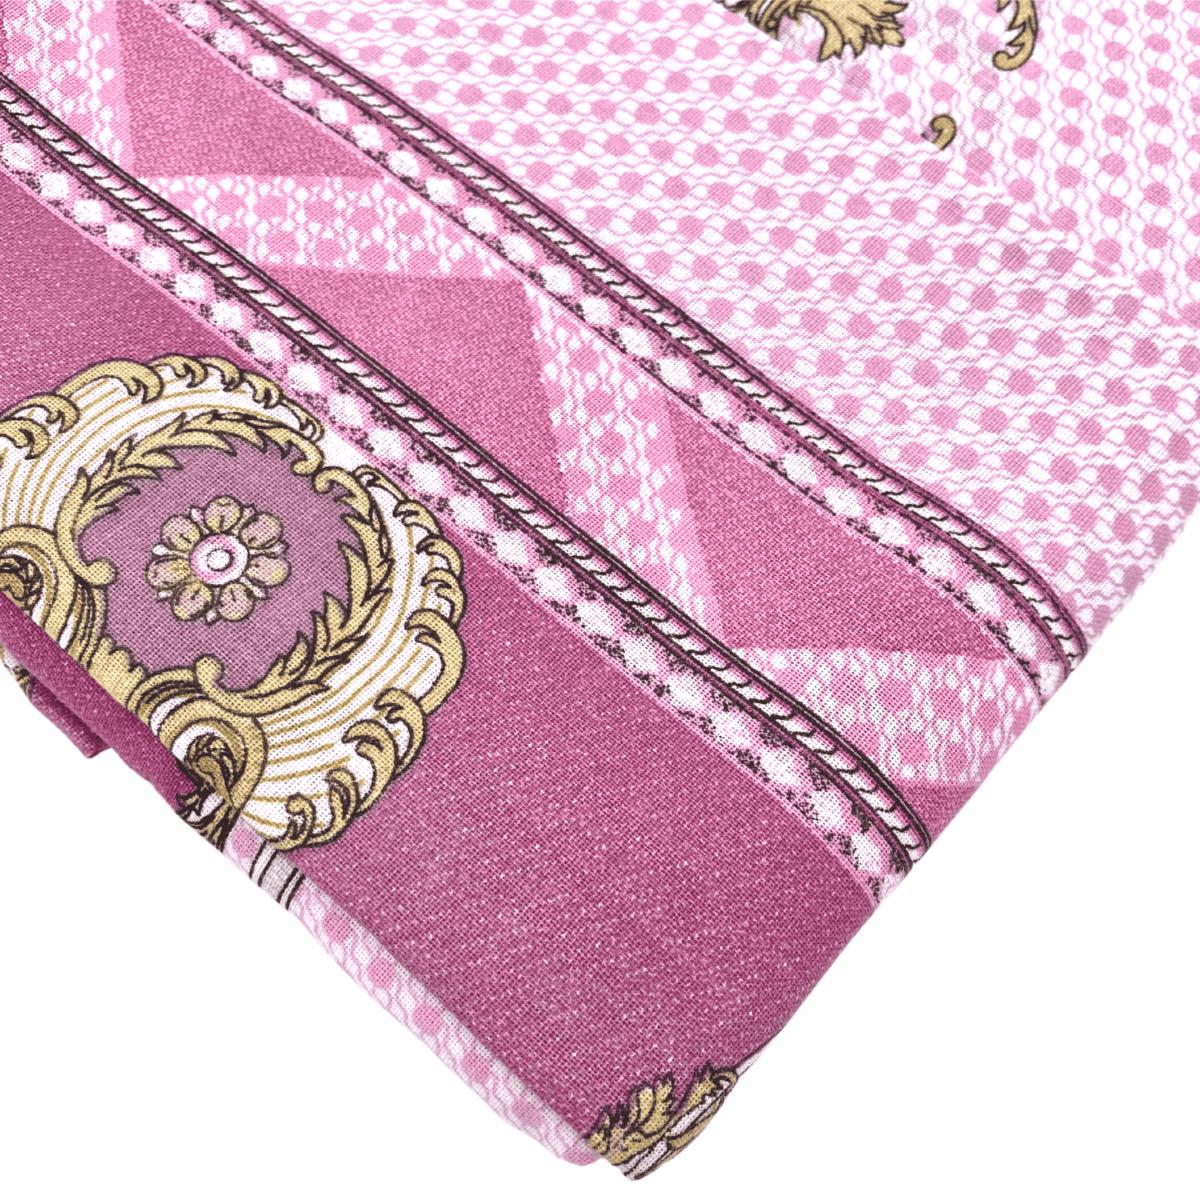 royal-rosa-pauline-completo-lenzuola-cotone-cipria-porpora-medaglioni-oro-dettaglio